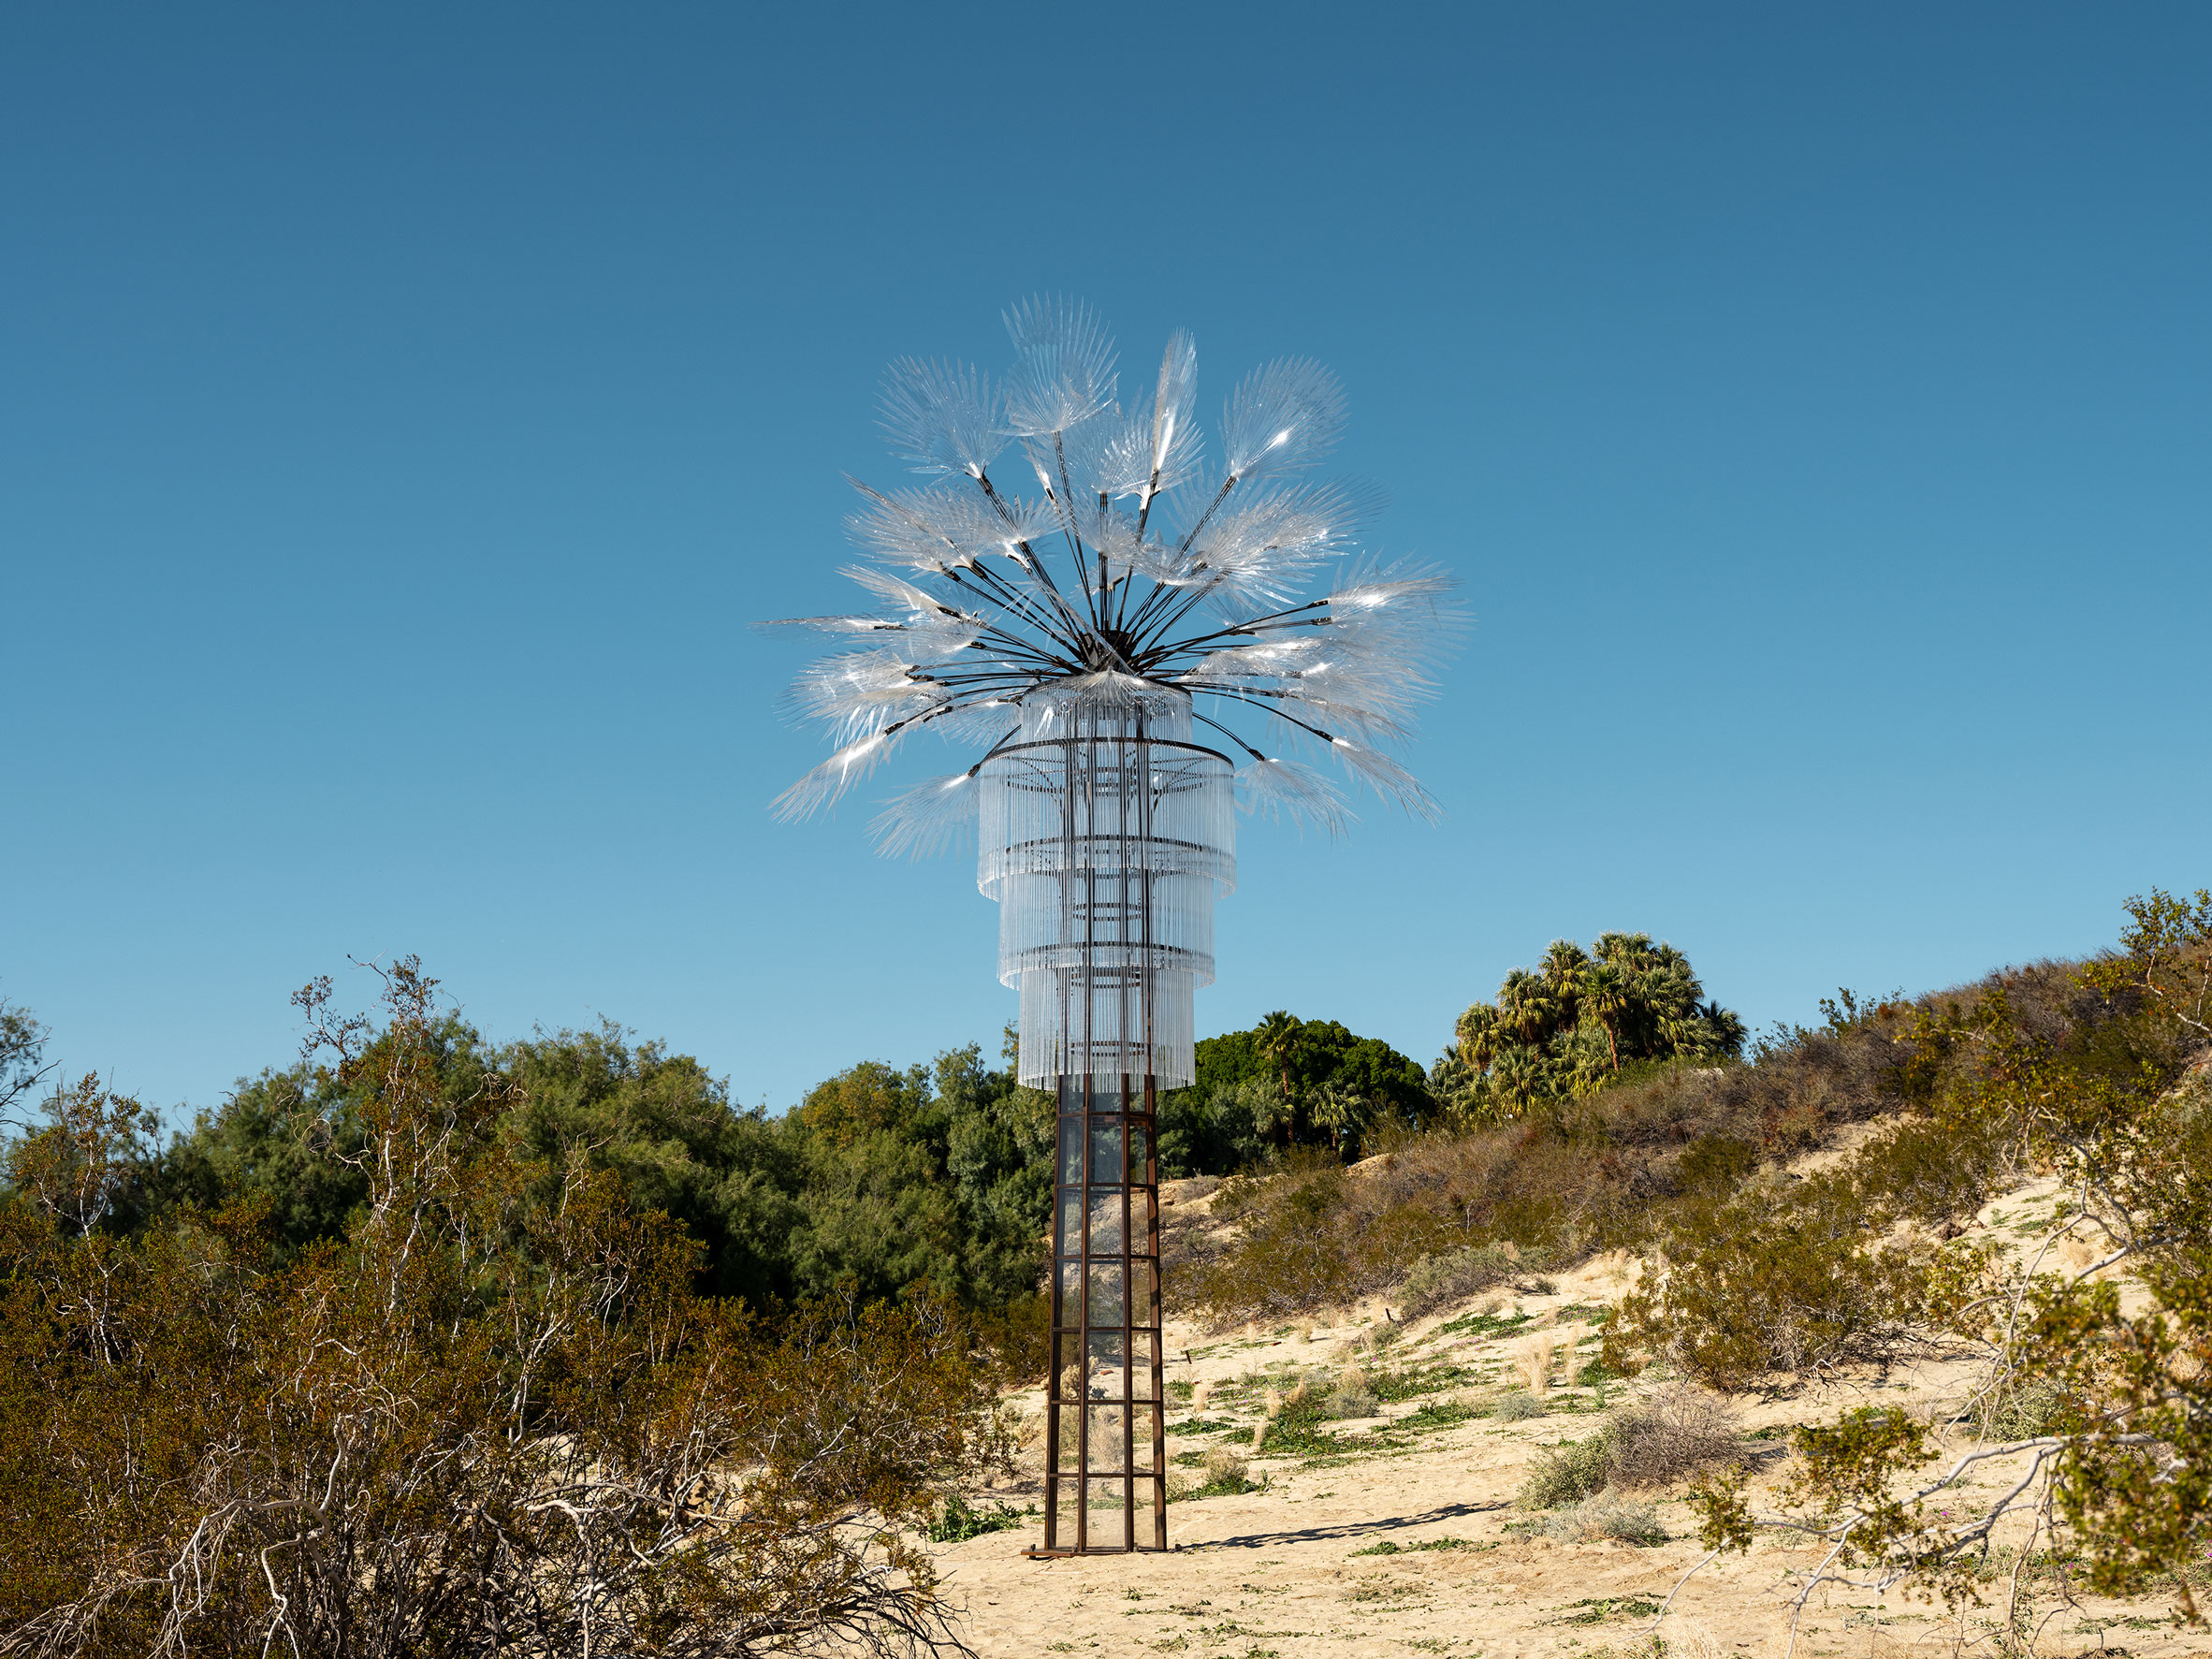 Katie Ryan's installation for Desert X 2019